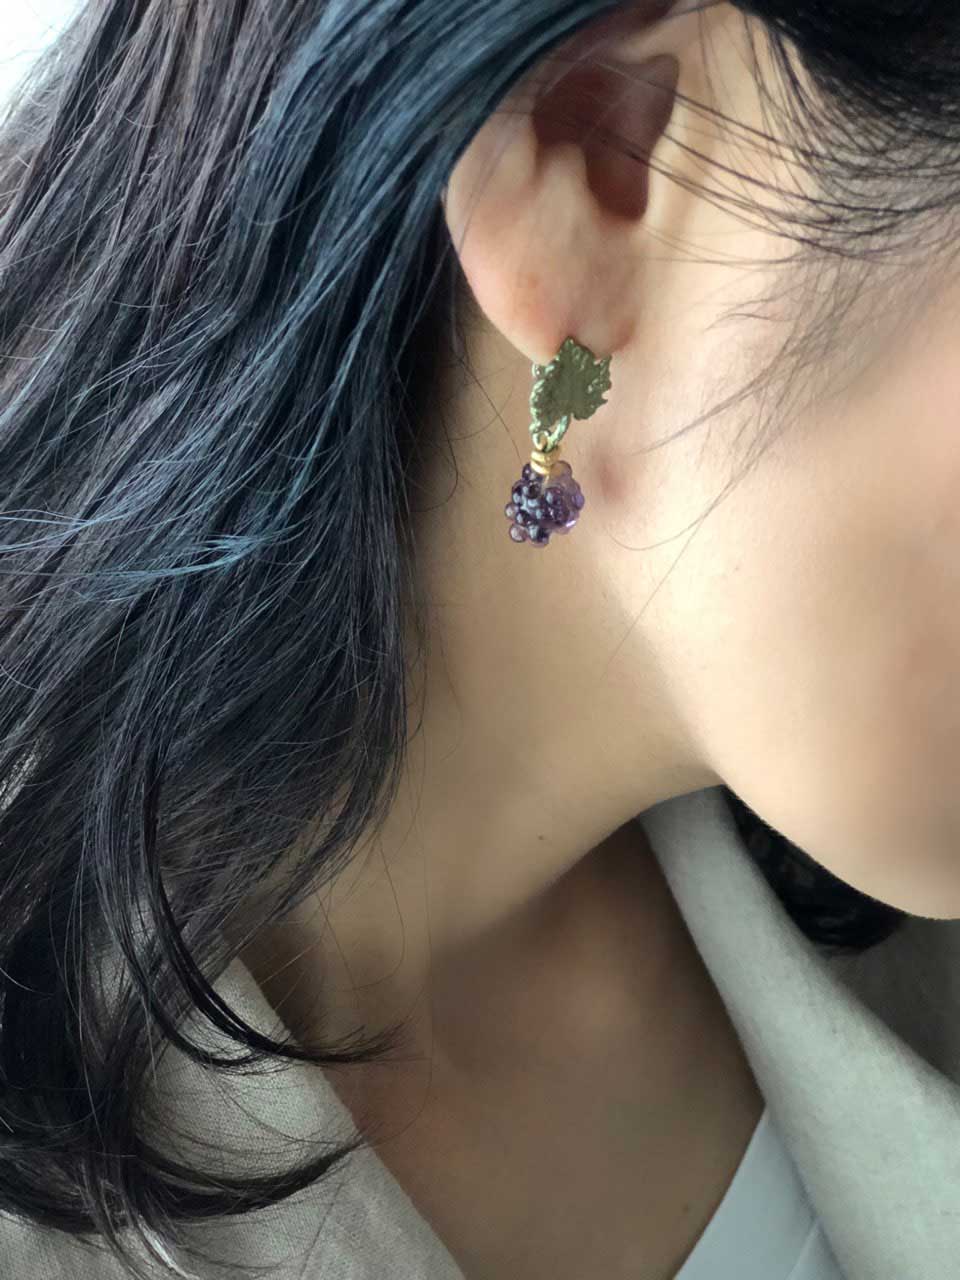 ワイルドグレープヴァイン ポストピアス / Wild Grape Vine Post Earrings